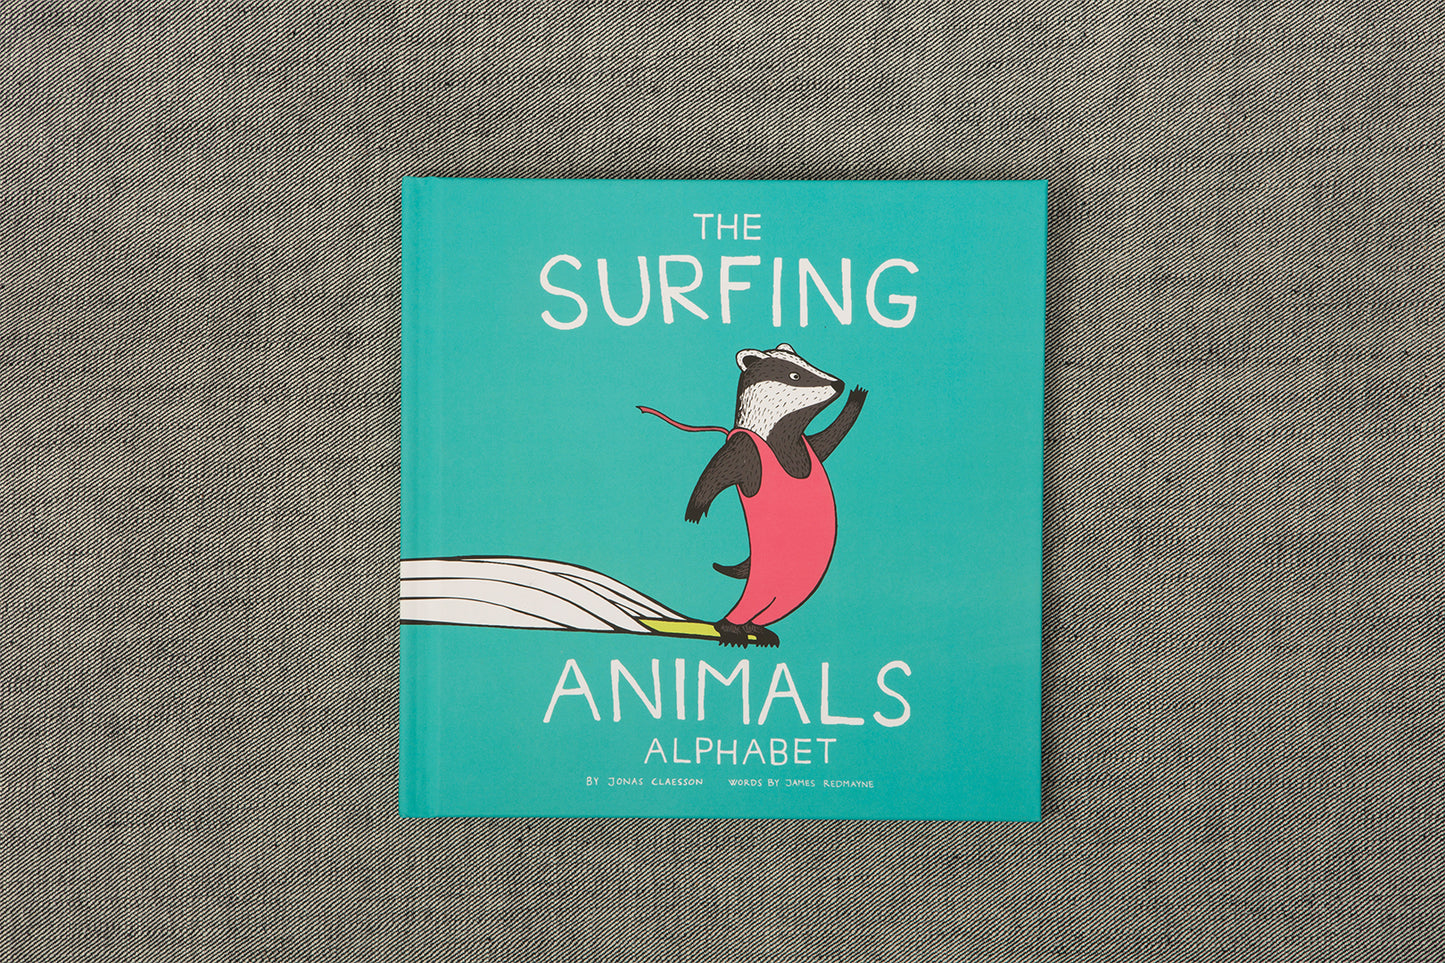 The Surfing Animals Alphabet